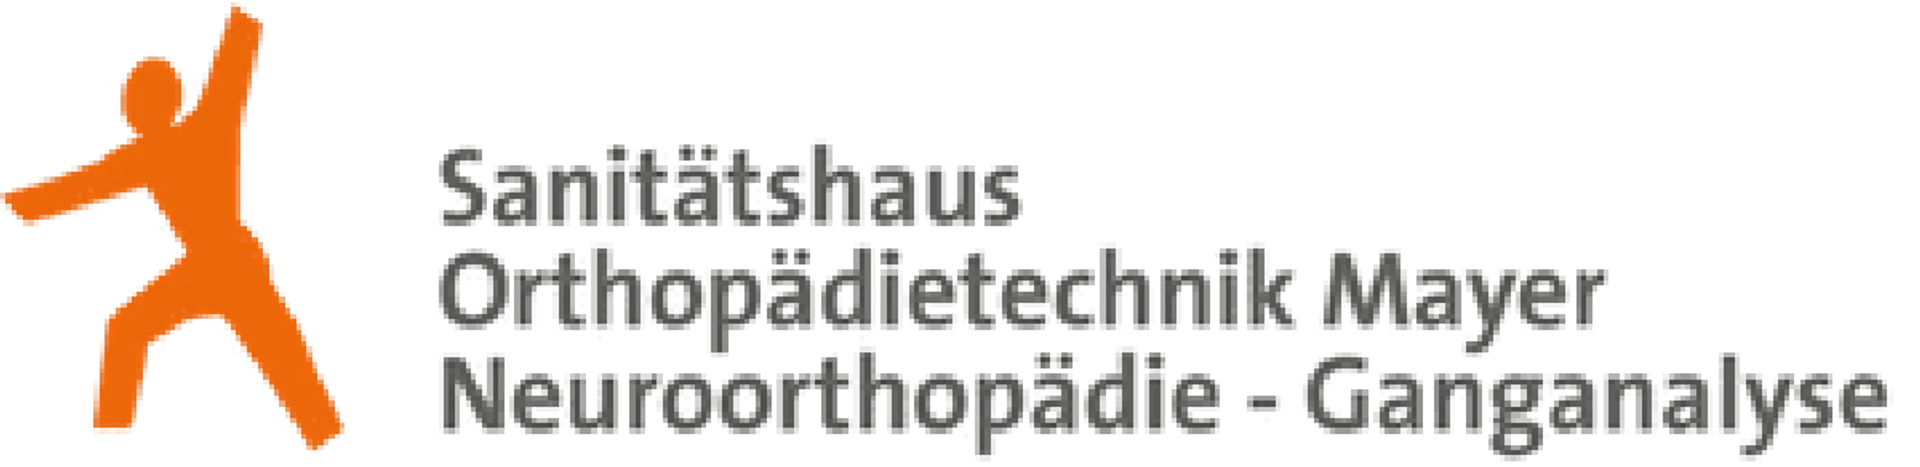 SANITÄTSHAUS MAYER logo die aktuell Flugblatt